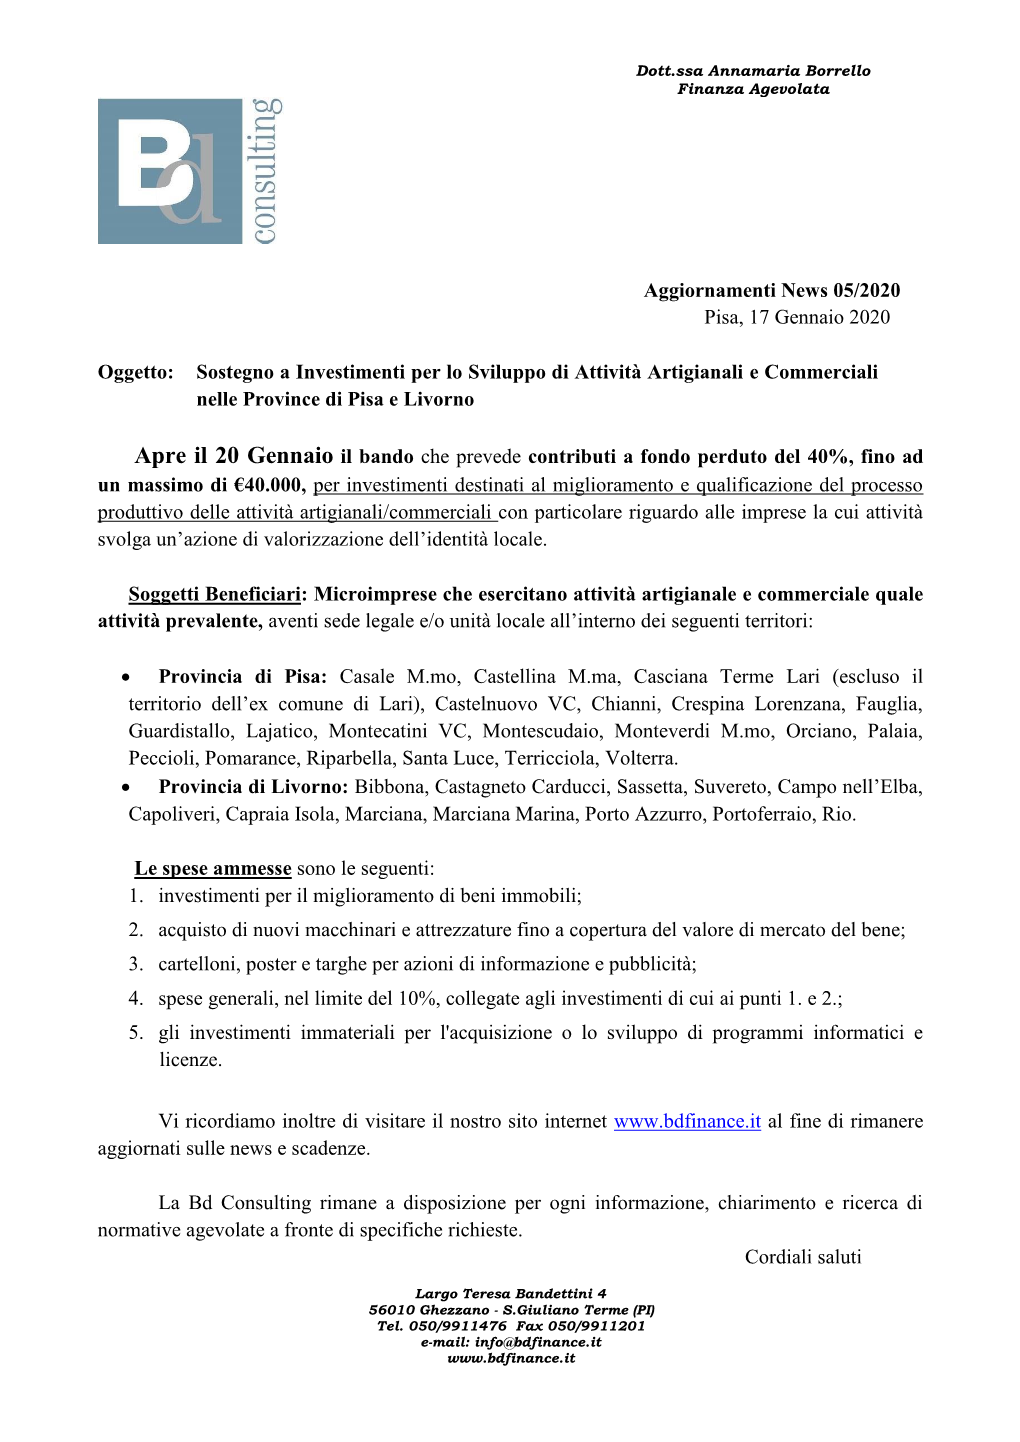 Aggiornamenti News 05/2020 Pisa, 17 Gennaio 2020